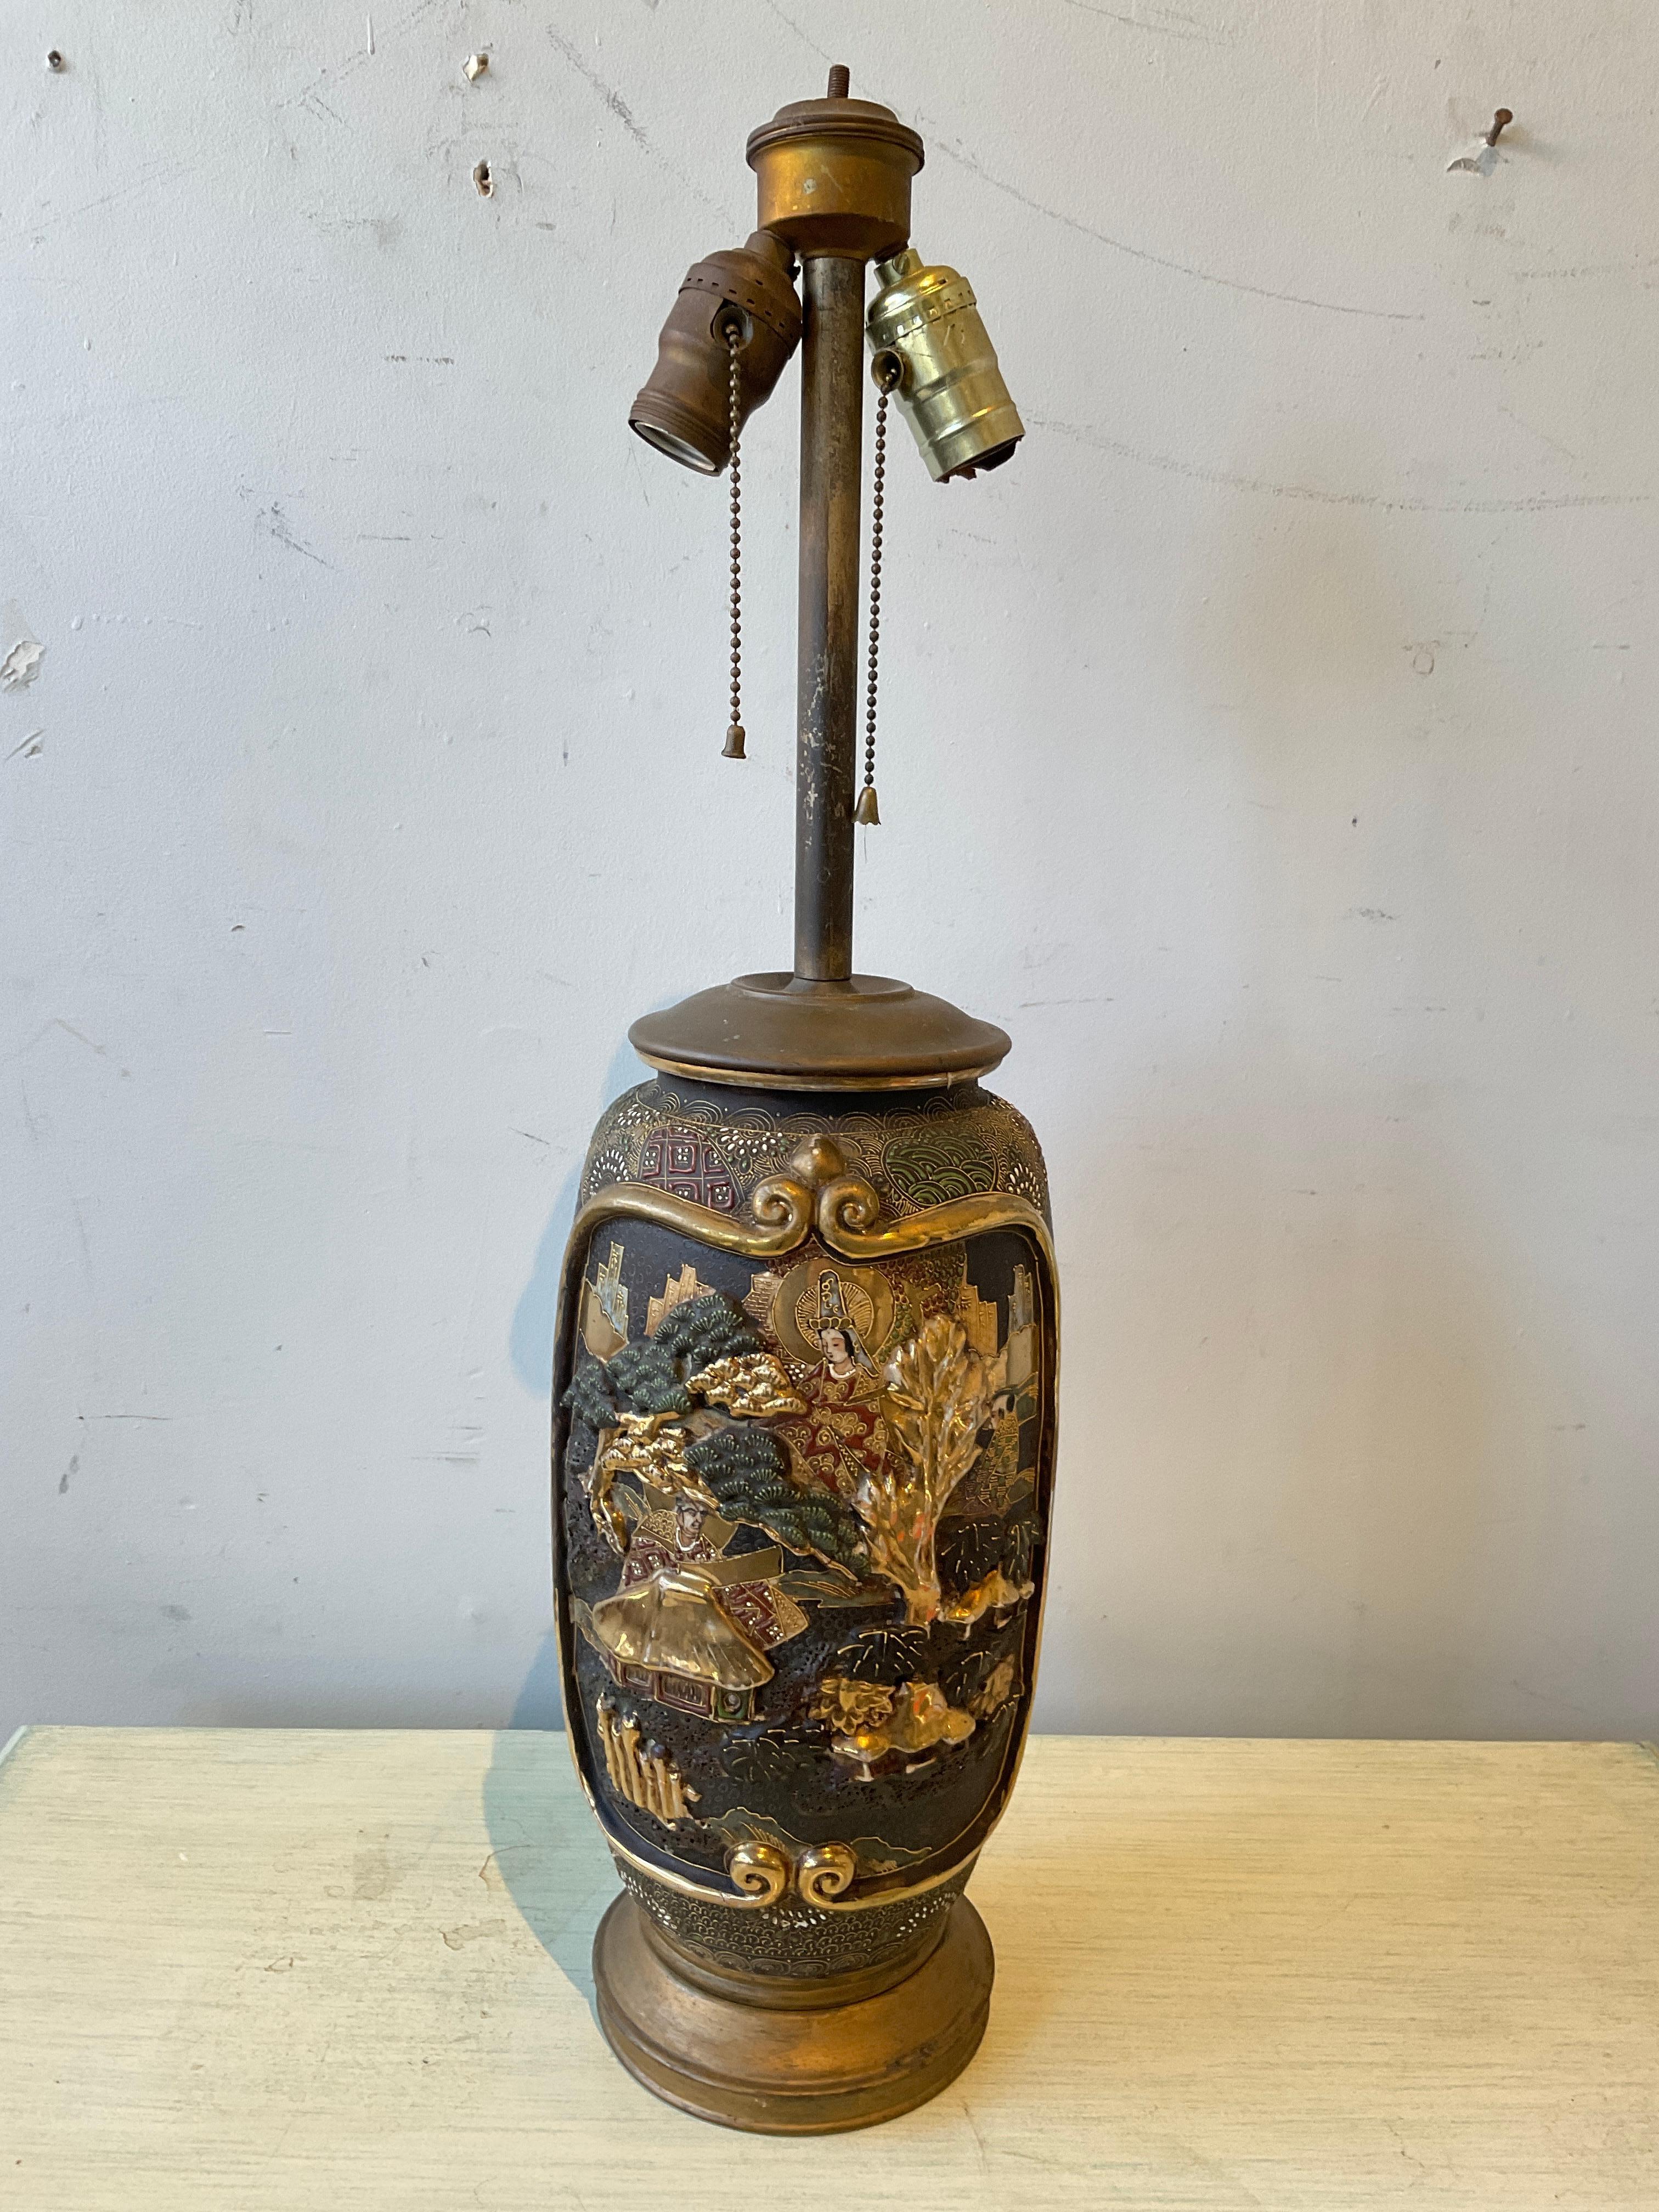 1890er Jahre Keramik Vase Lampe Satsuma. Die Höhe bezieht sich auf die Oberkante des Sockels.
Die Lampe muss neu verkabelt werden.